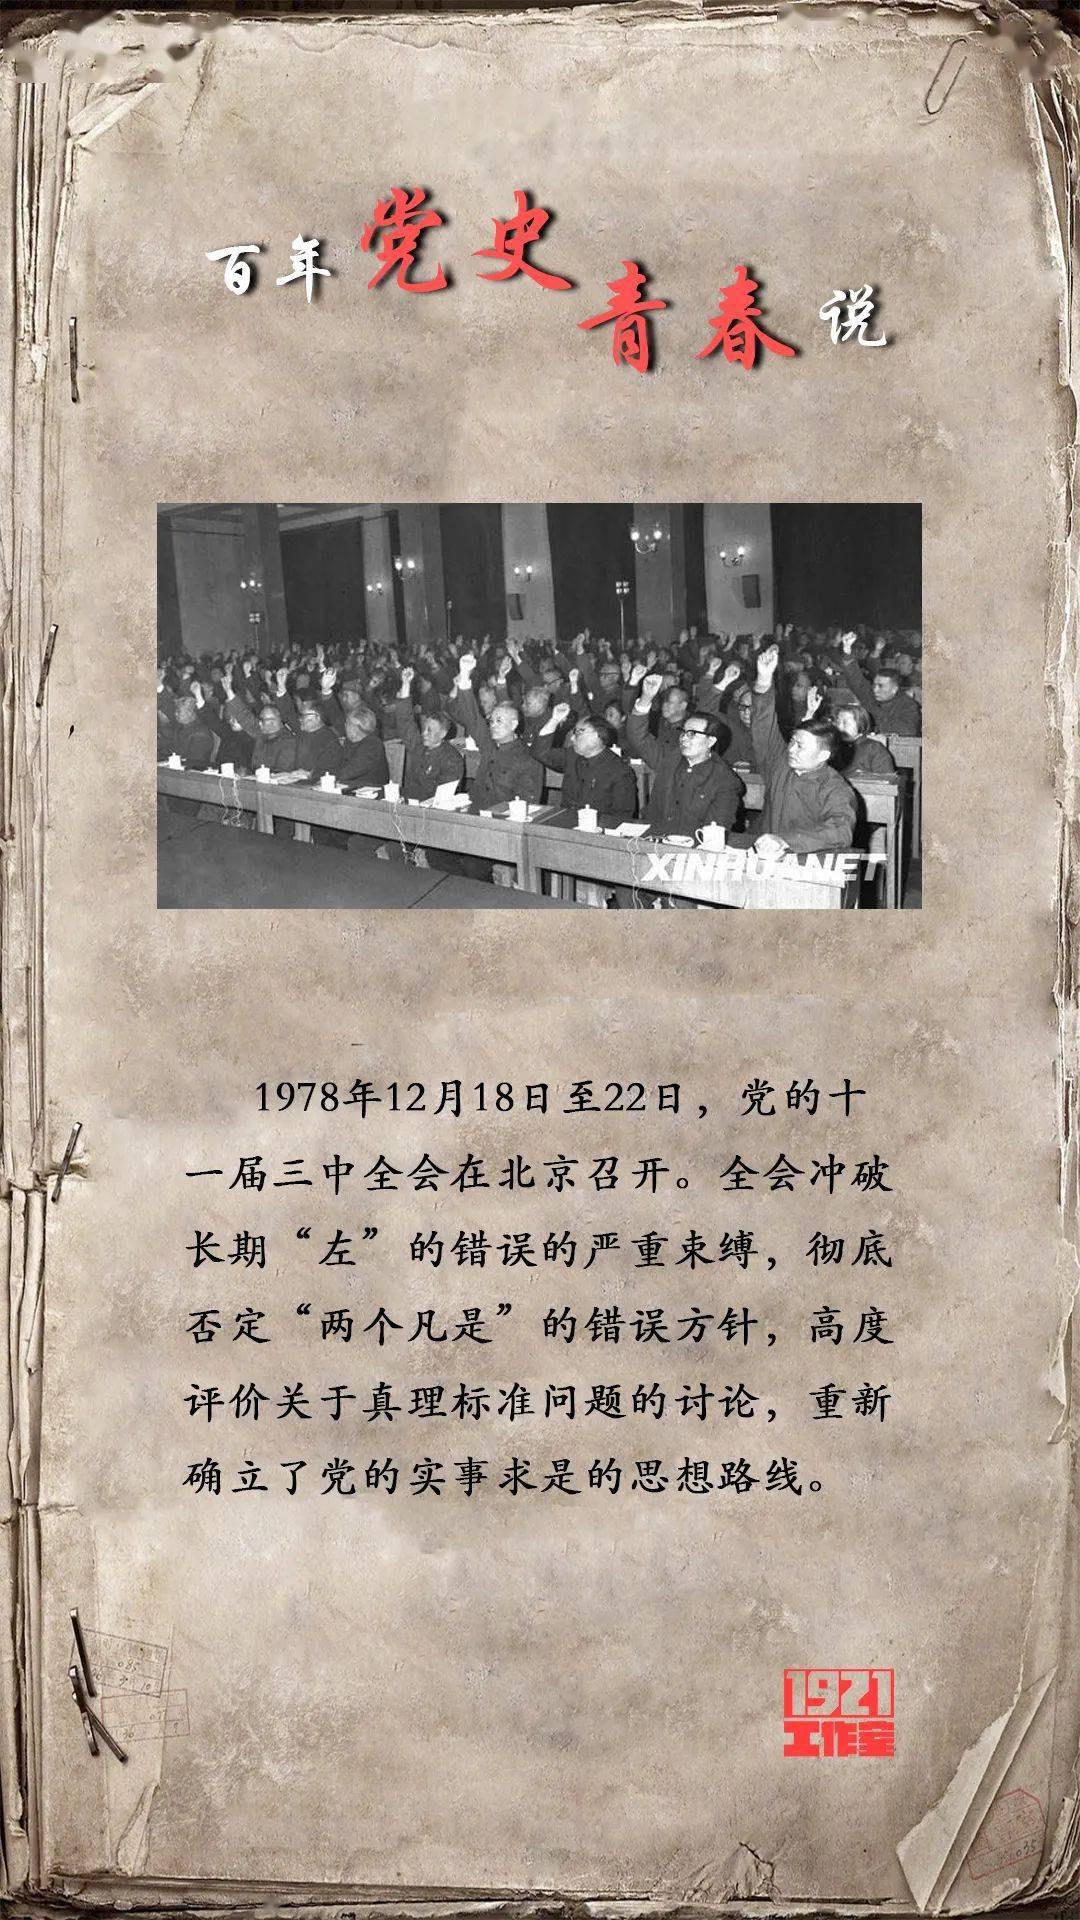 内蒙古分公司要客部副总经理内蒙古青联委员)1978年12月18日至22日,党